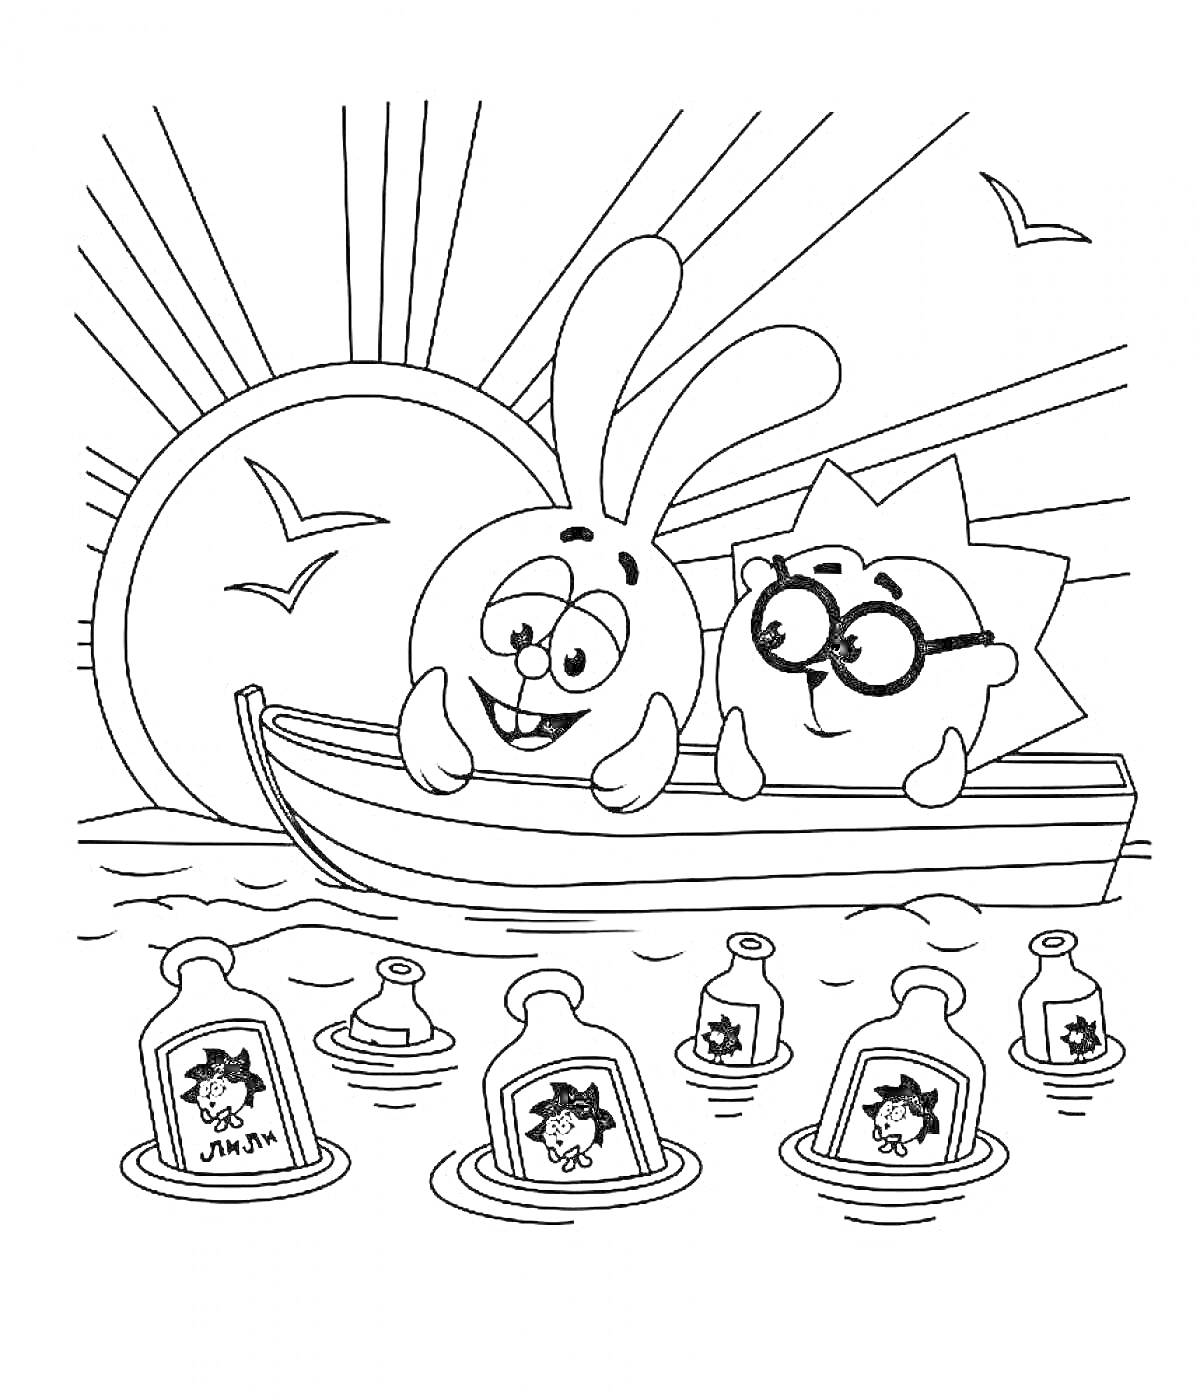 Раскраска Кроша и ежик в лодке на воде с плавающими бутылками во время заката, на фоне солнце и летящие чайки